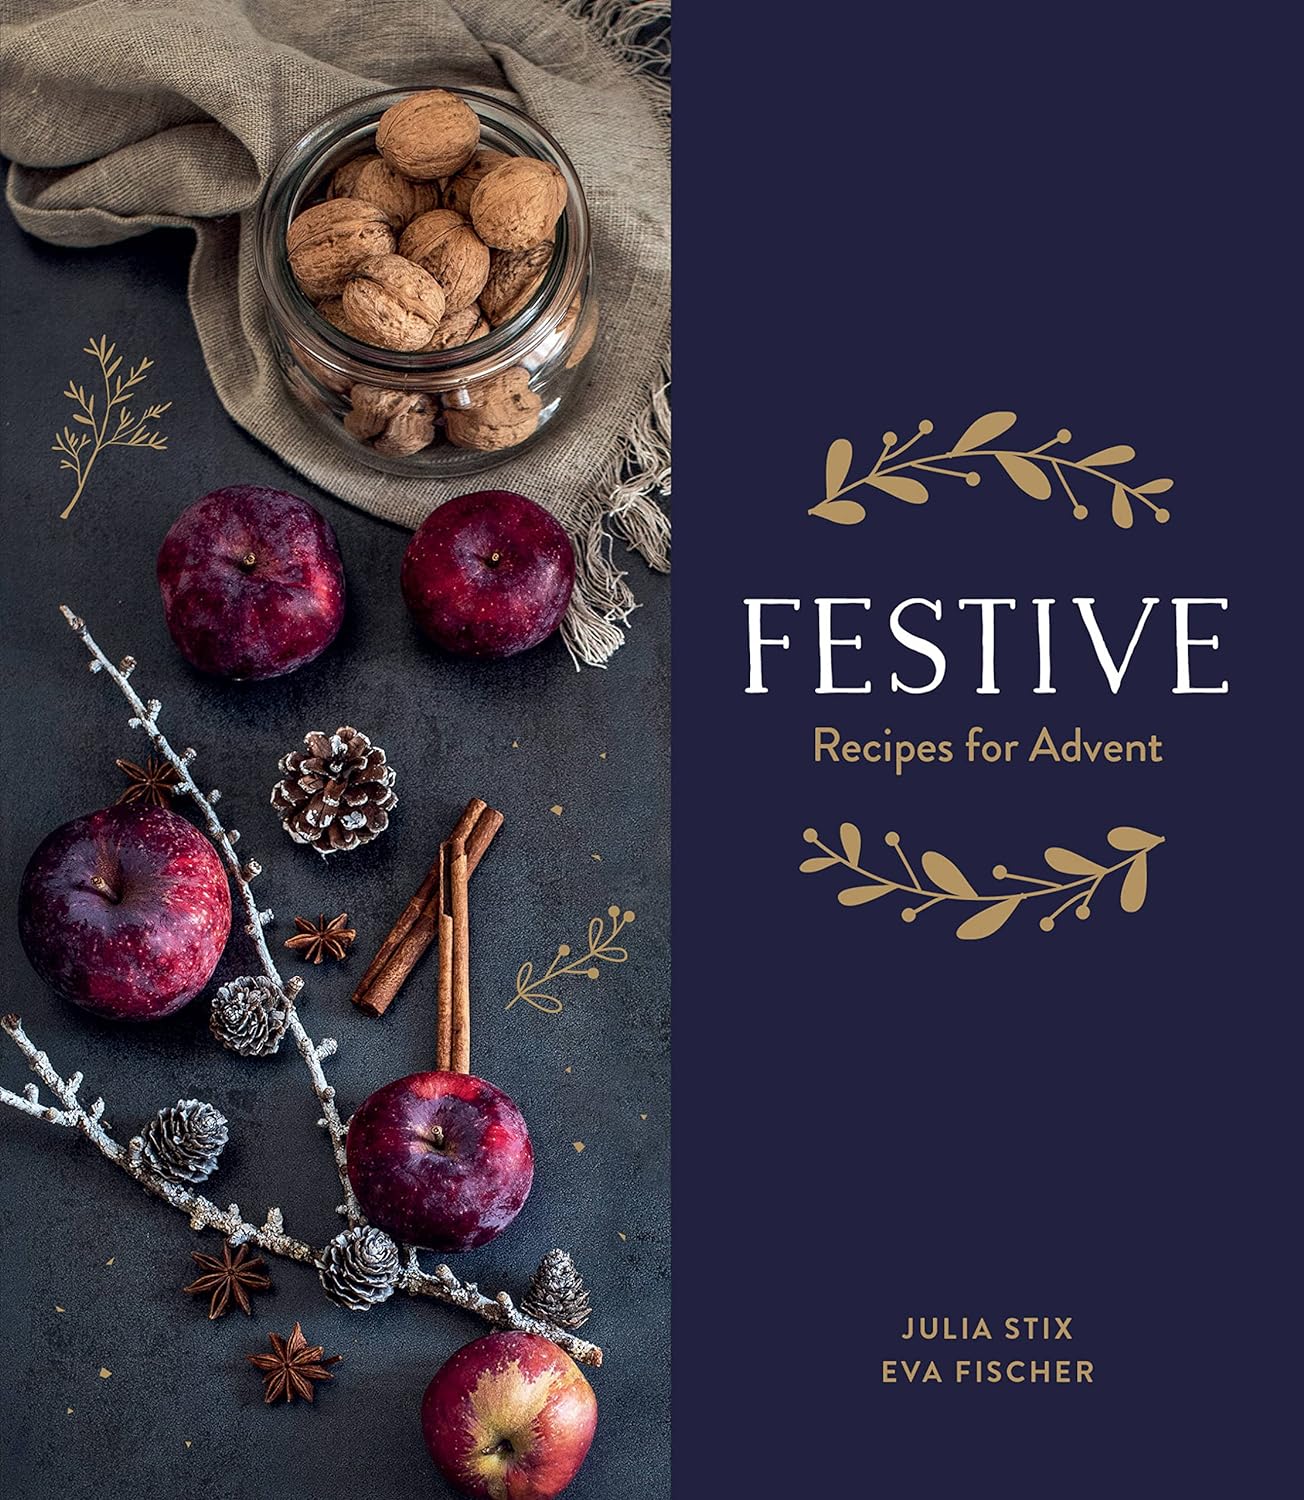 Book: Festive, Recipes for Advent